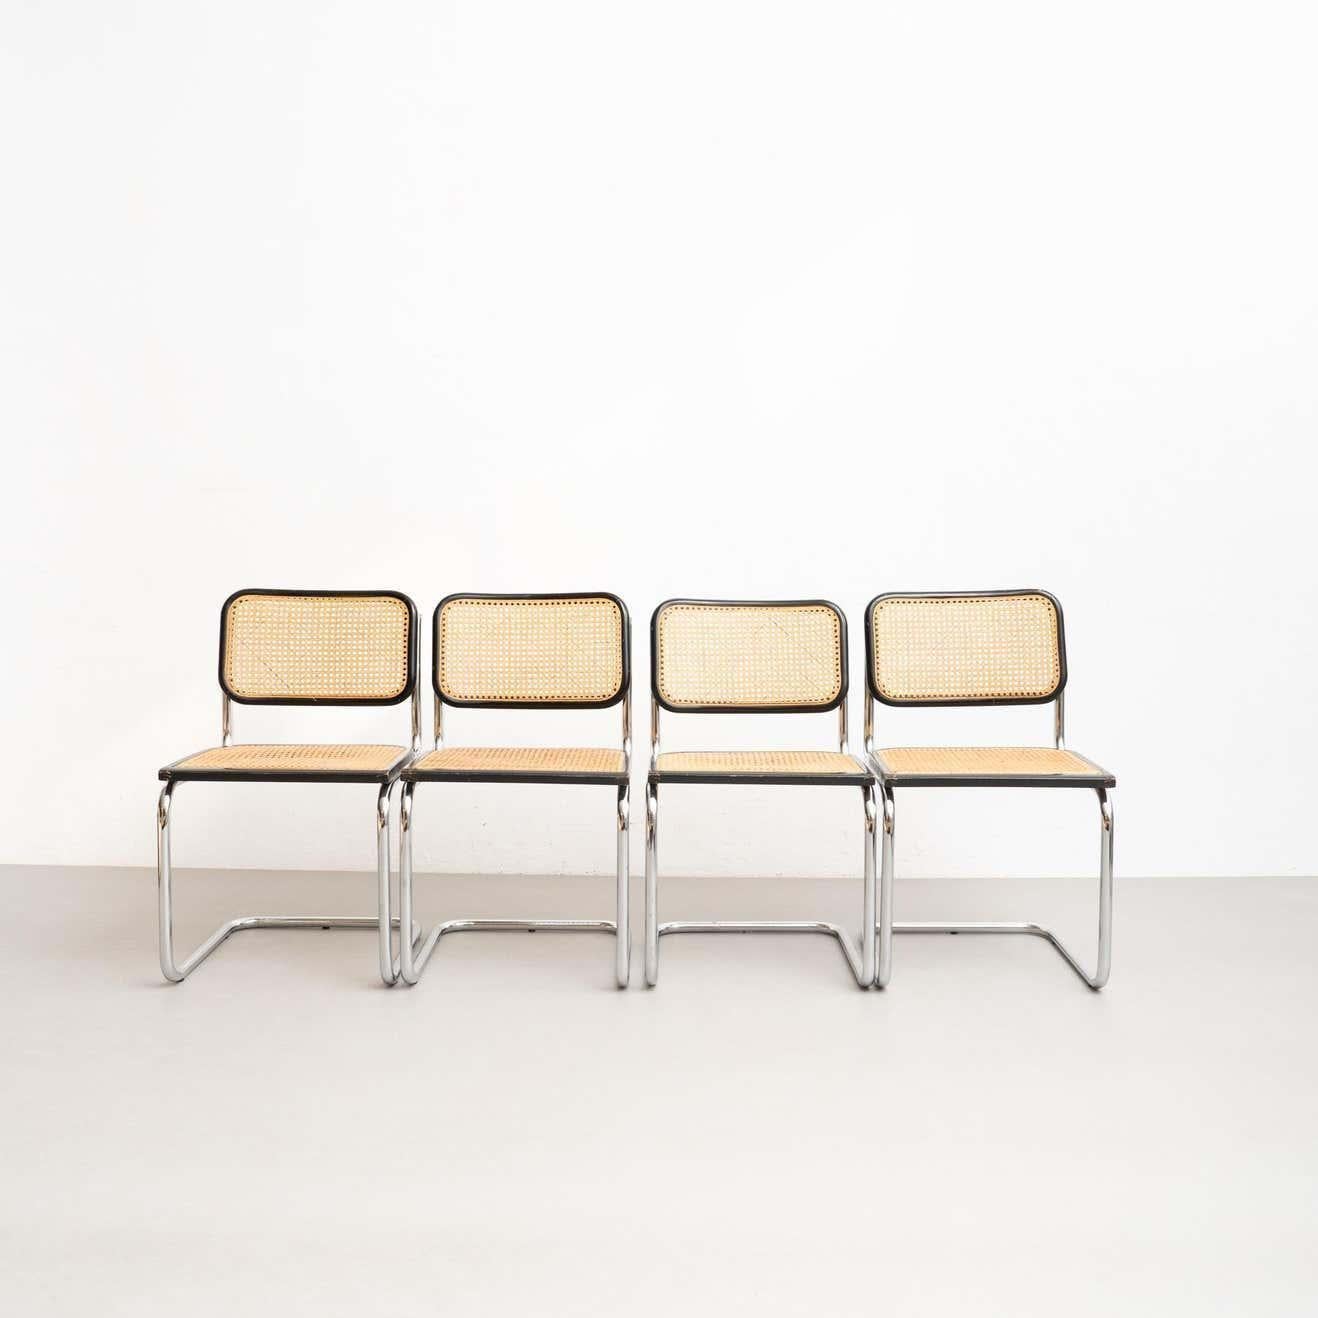 Ensemble de 4 chaises Cesca, conçues par Marcel Breuer.

Fabriqué en Italie, vers 1960 par un fabricant inconnu

Cadre en tube métallique, structure de l'assise et du dossier en bois et rotin.

En bon état d'origine, avec une usure mineure conforme